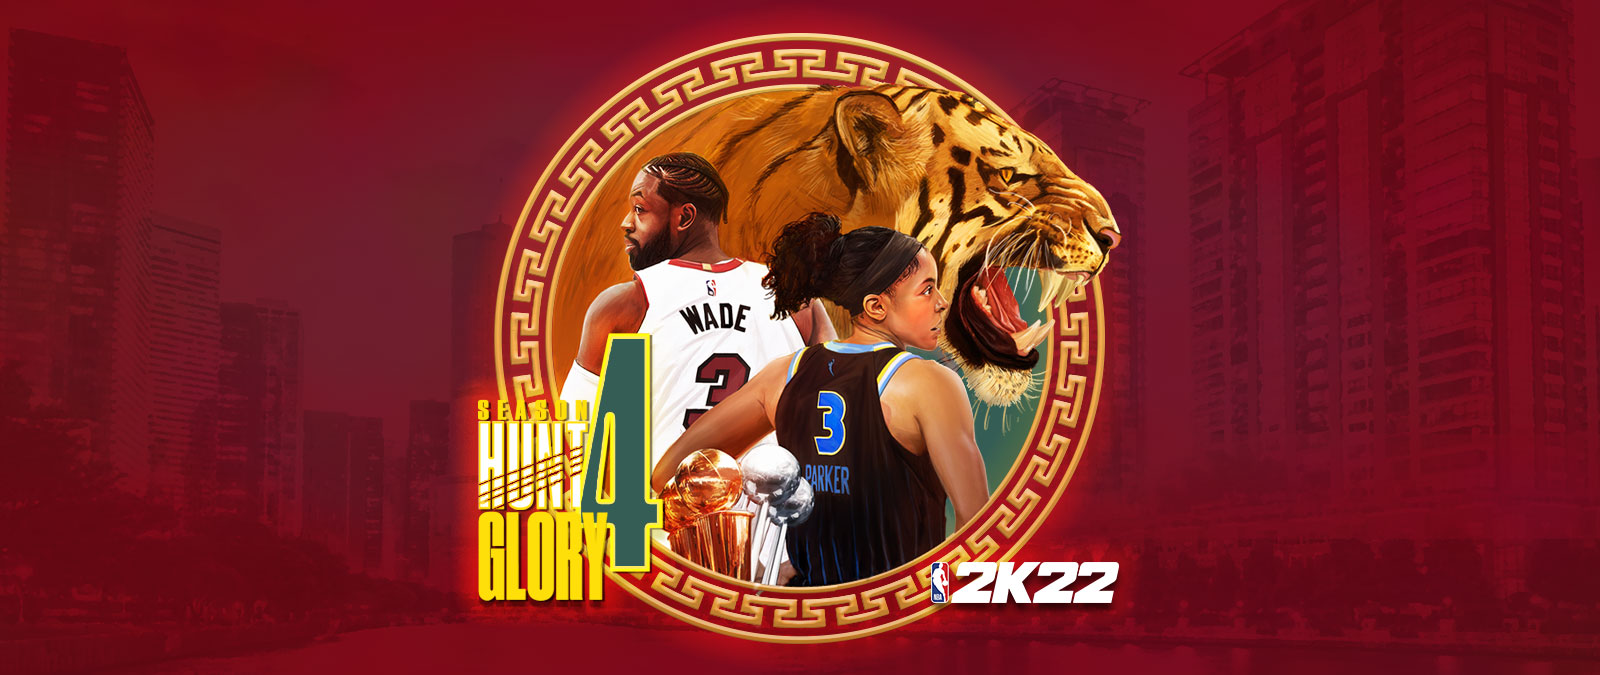 『NBA 2K22 - シーズン 4: 栄光を求めて』: 赤を基調とした街並みの上に円形のグラフィック要素が配置され、唸る虎や、背中を向けたドウェイン・ウェイドとキャンディス・パーカーが描かれている。 